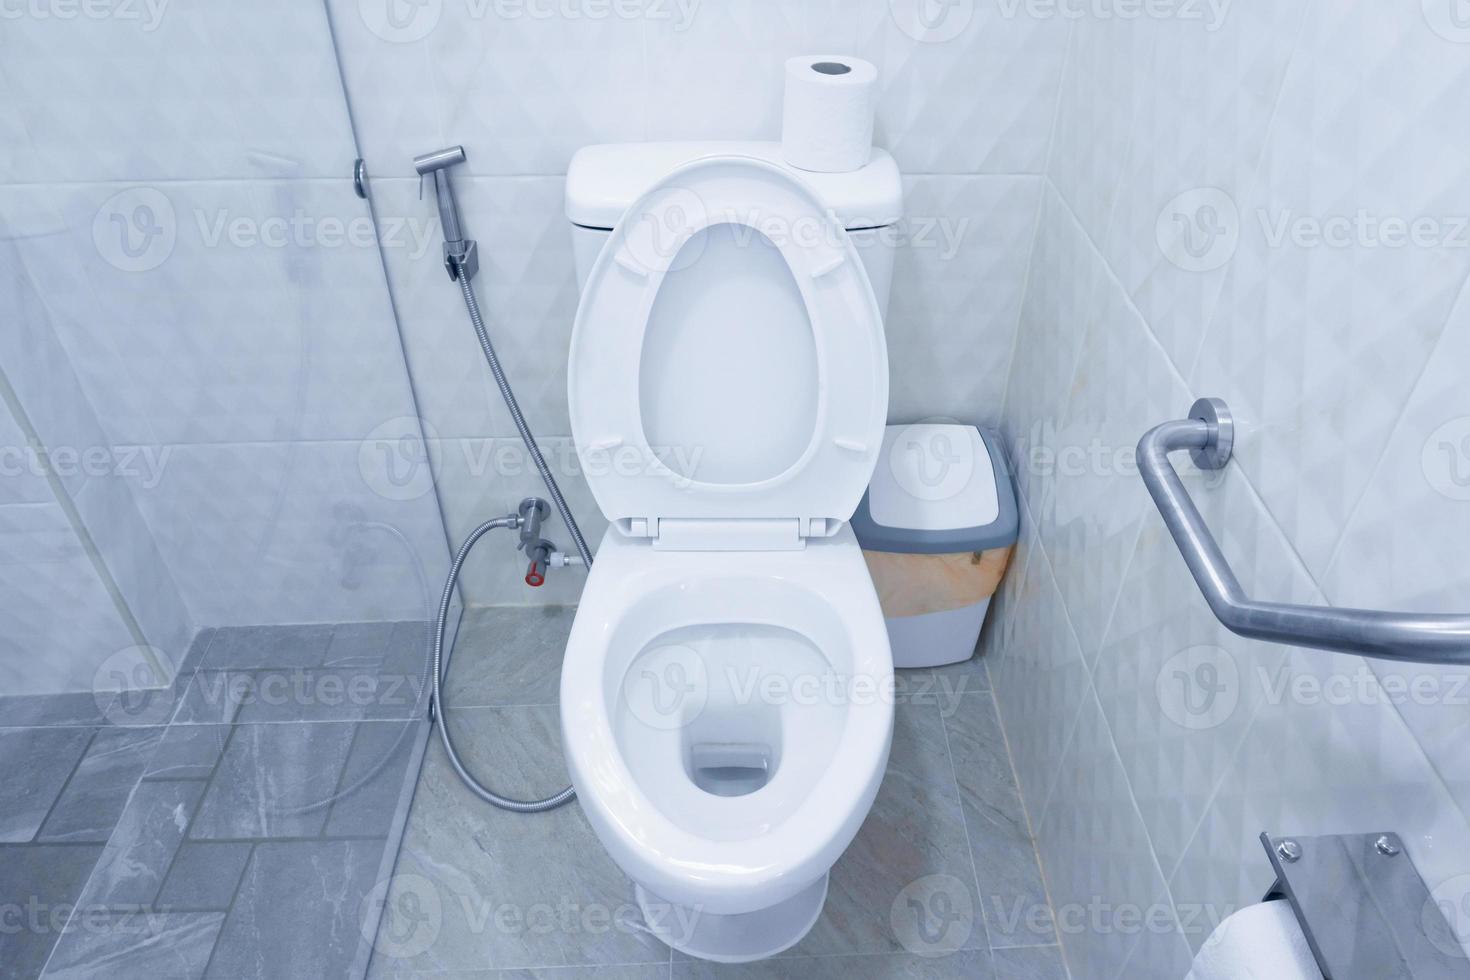 toilettenschüssel in einem modernen badezimmer mit mülleimern und toilettenpapier, toilettenspülung, sauberes badezimmer foto